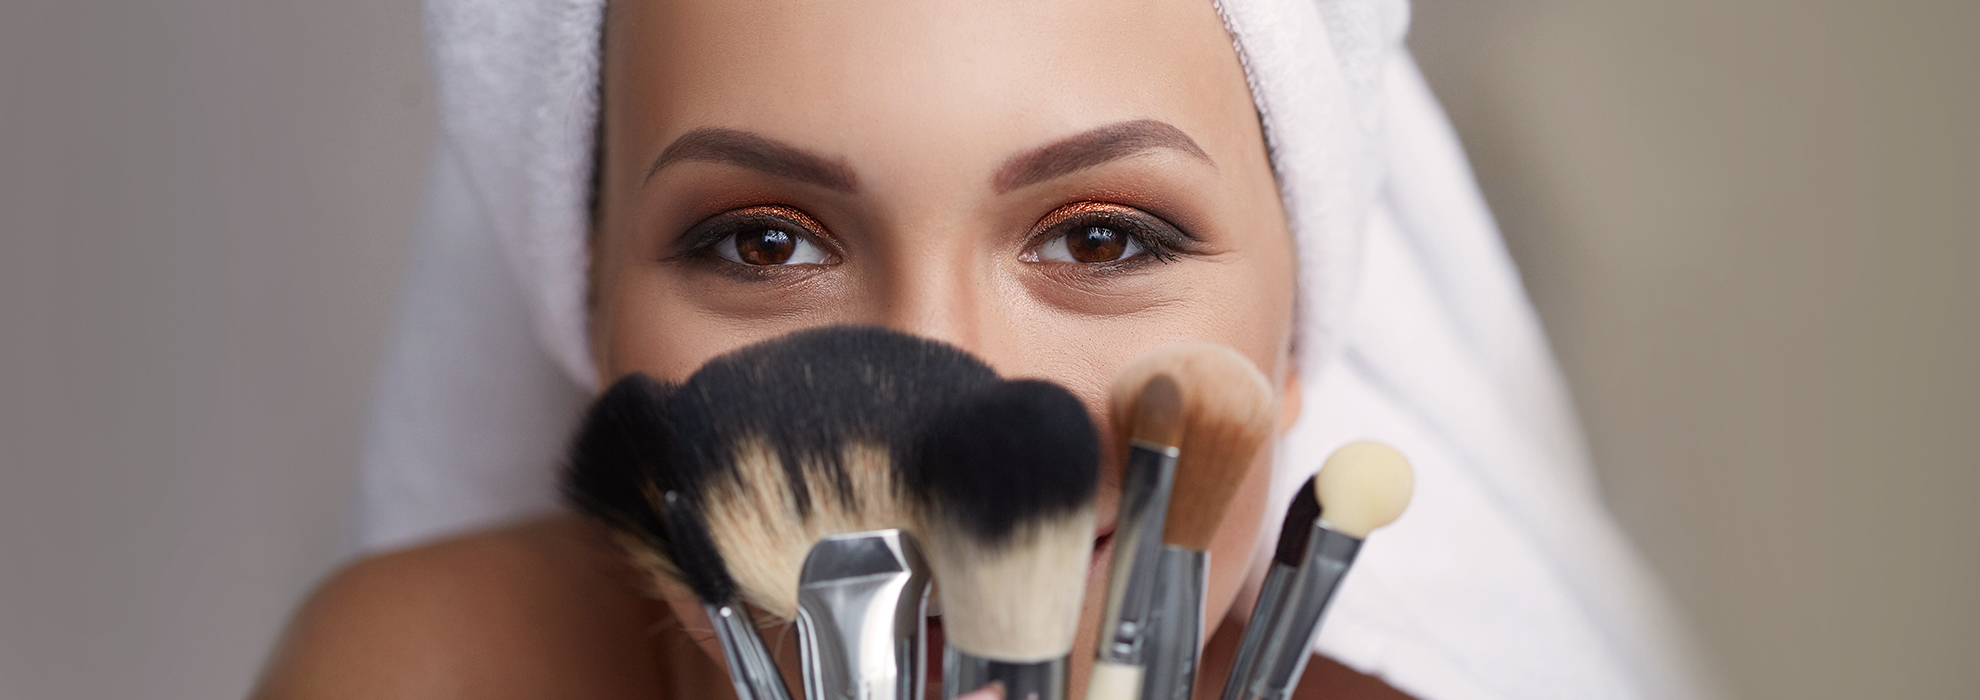 Pennelli makeup: quali scegliere? Breve guida per il trucco